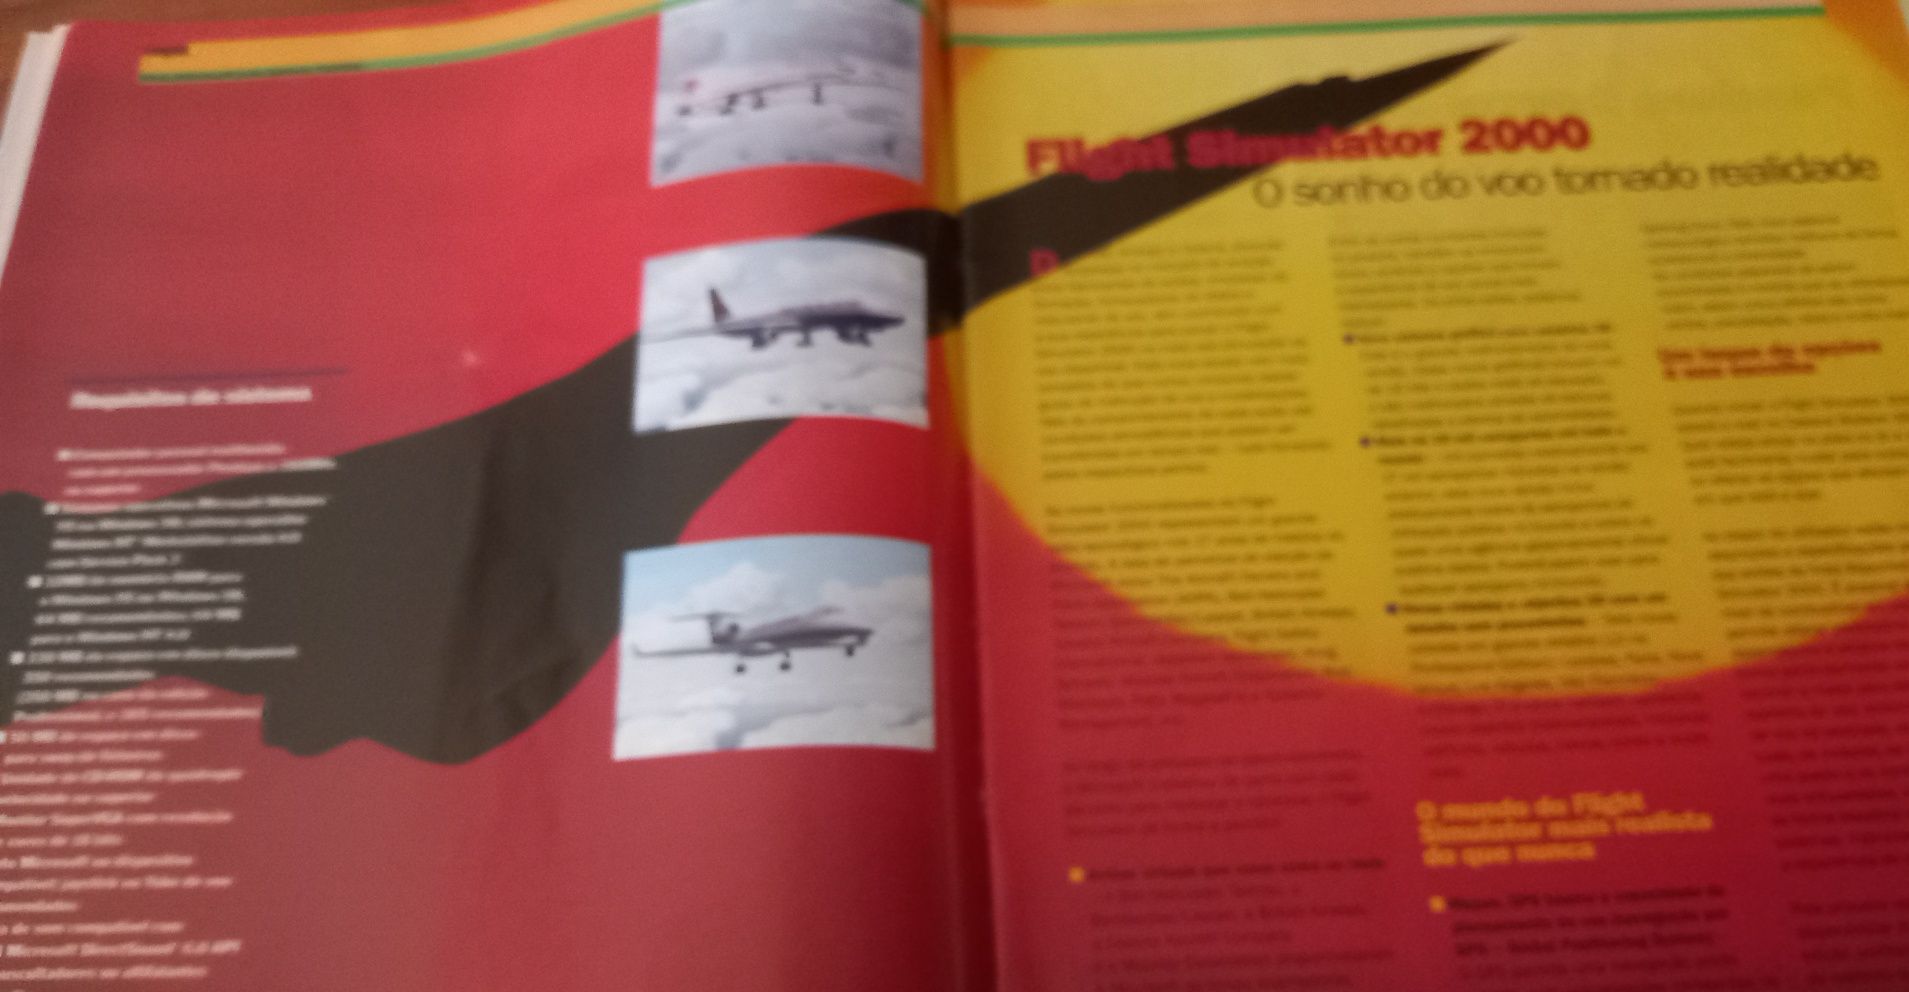 Microsoft magazine n°31 novidades Flight simulator 2000 e outras